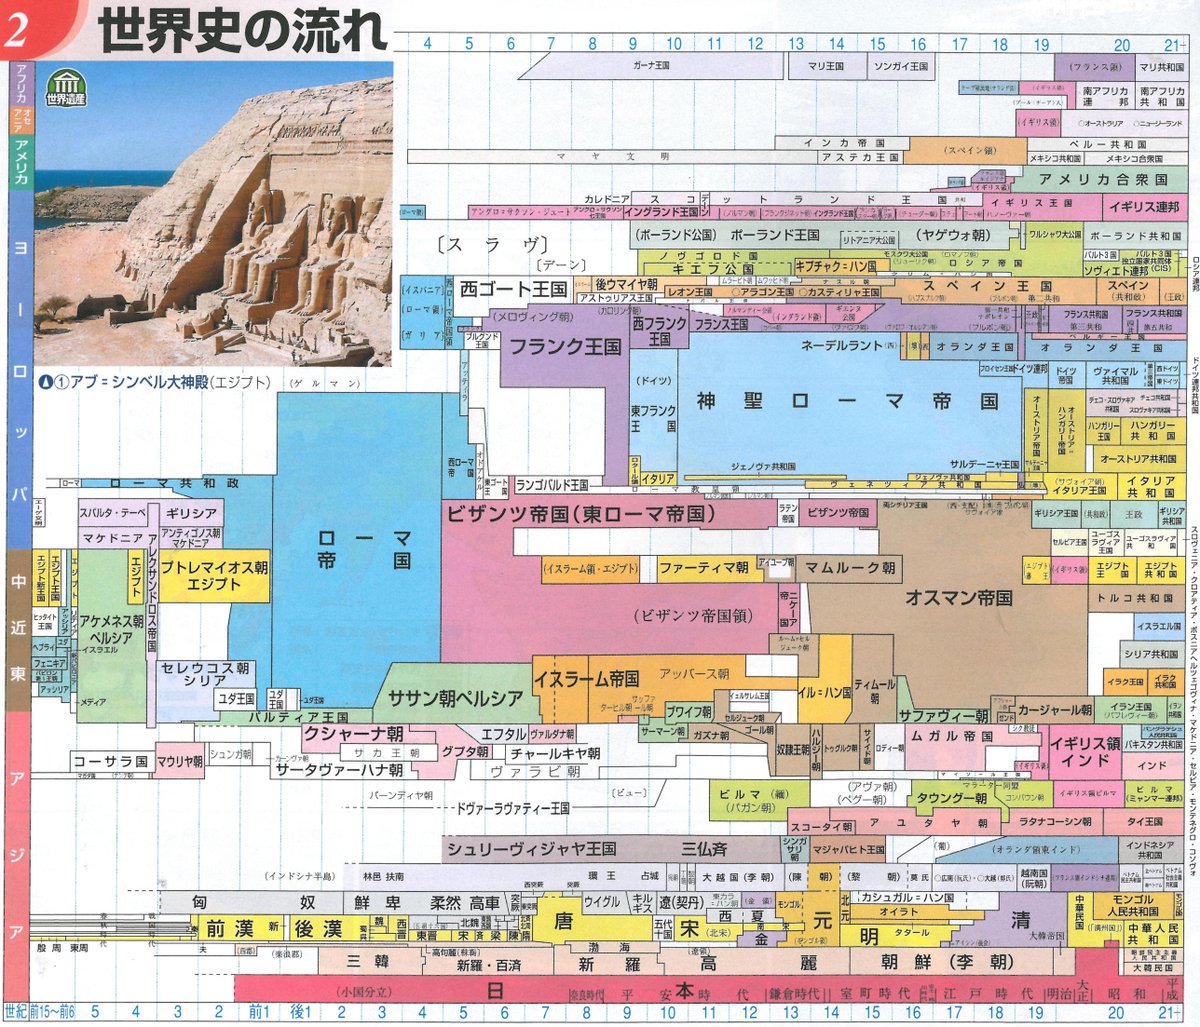 世界四季報 世界史と中国史と日本史の年表 実はキングダムを最近読み始めて 日本の弥生時代と中国の秦時代が同じ時代ということに衝撃を受けている T Co D3qy7cfpkq Twitter